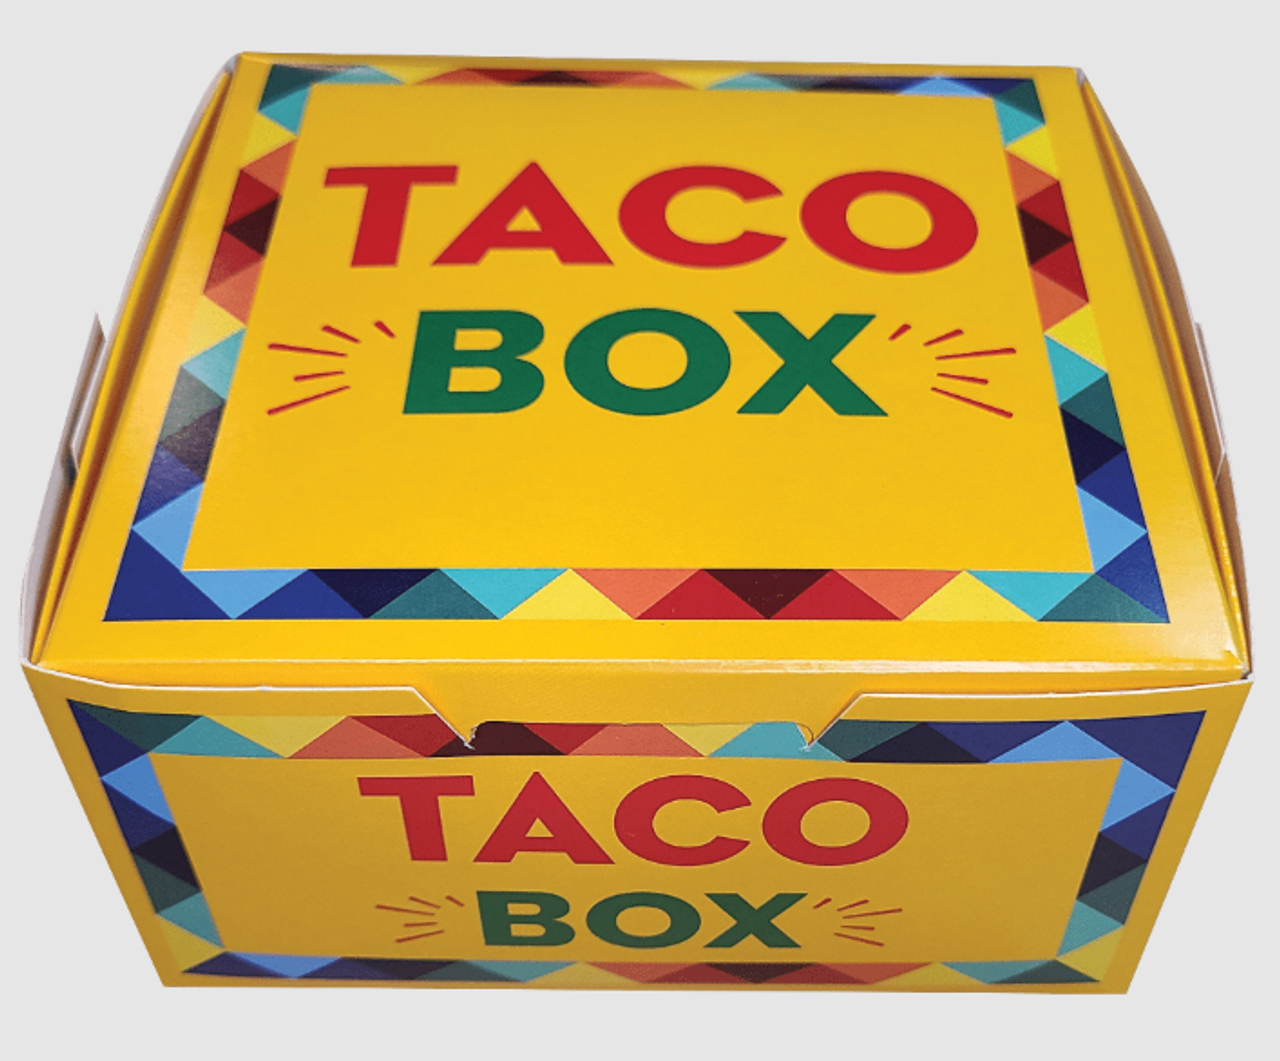 The Taco Box